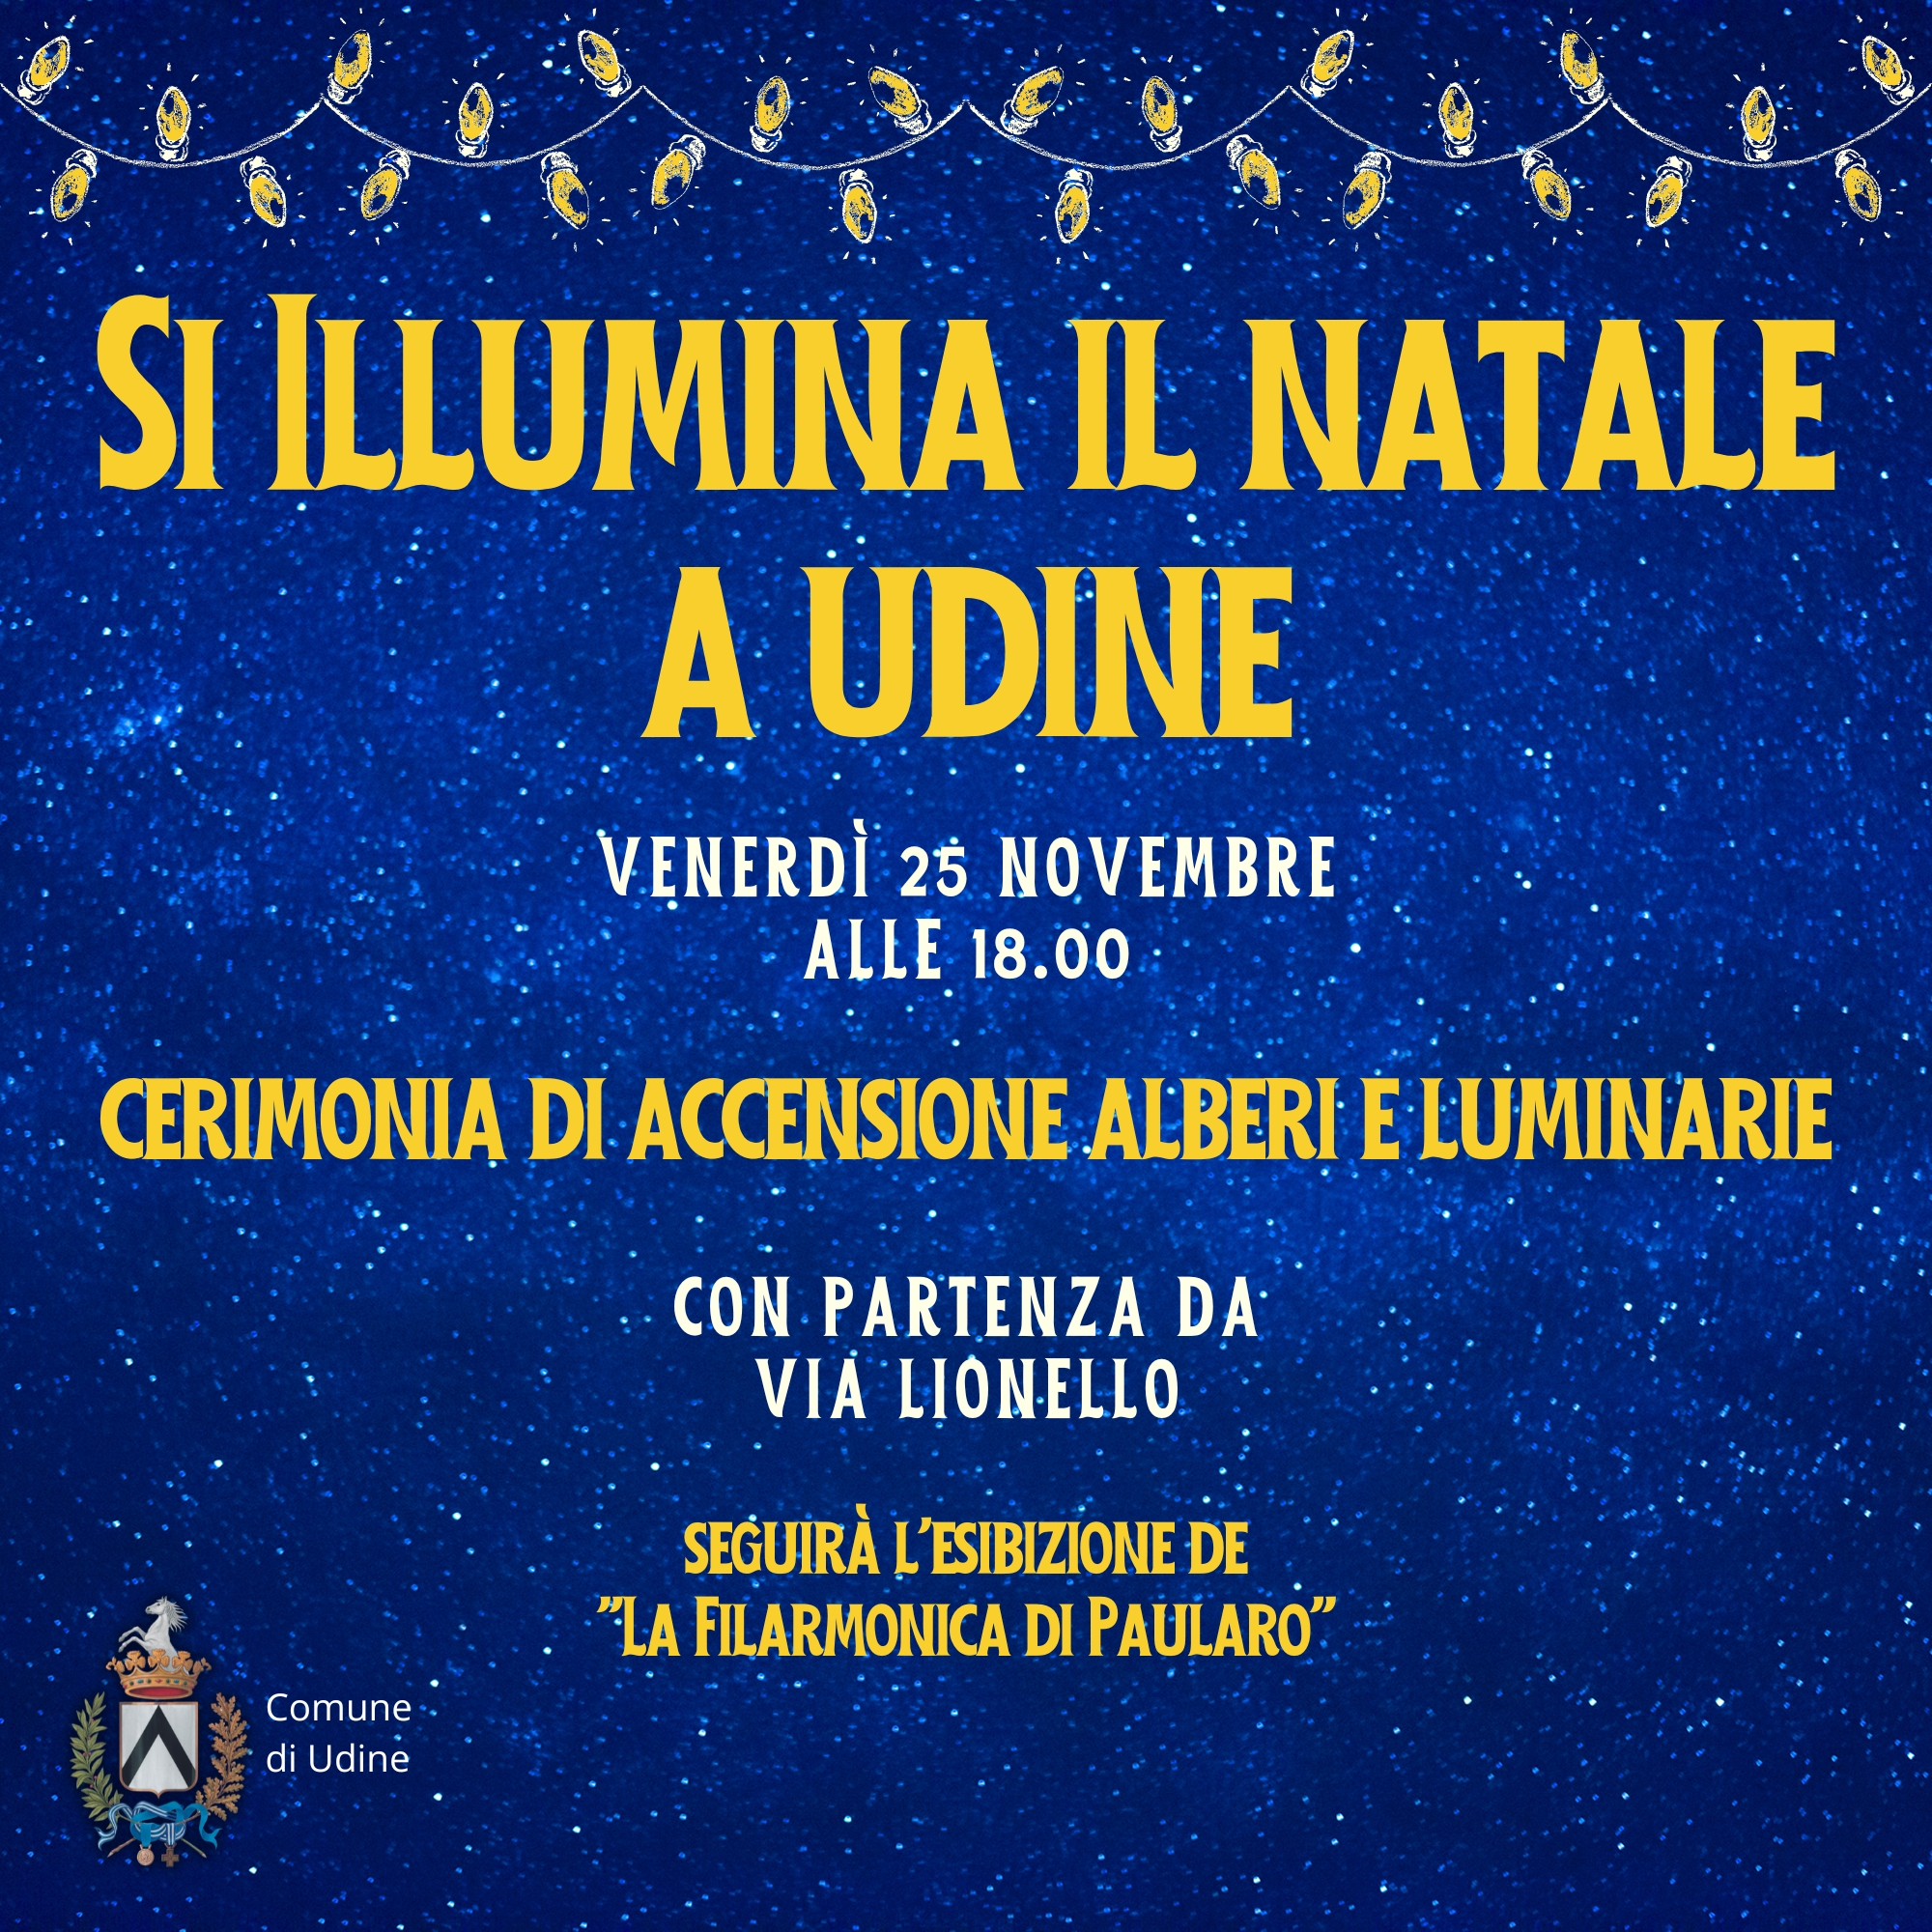 Accensione degli alberi e delle luminarie natalizie a Udine